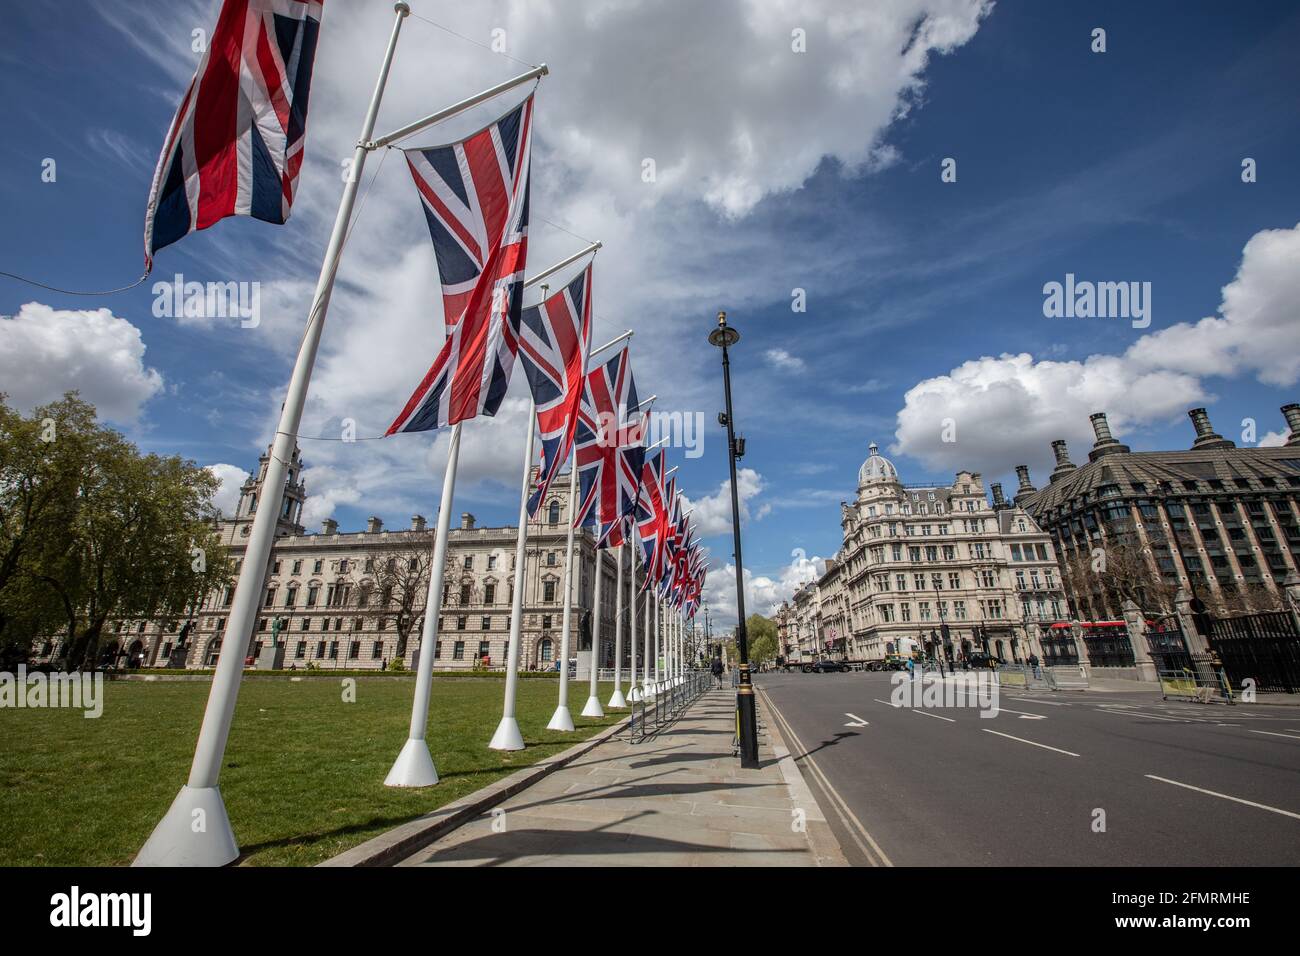 Ouverture d'État du Parlement, en présence de sa Majesté la reine Elizabeth II, Whitehall, centre de Londres, Angleterre, Royaume-Uni Banque D'Images